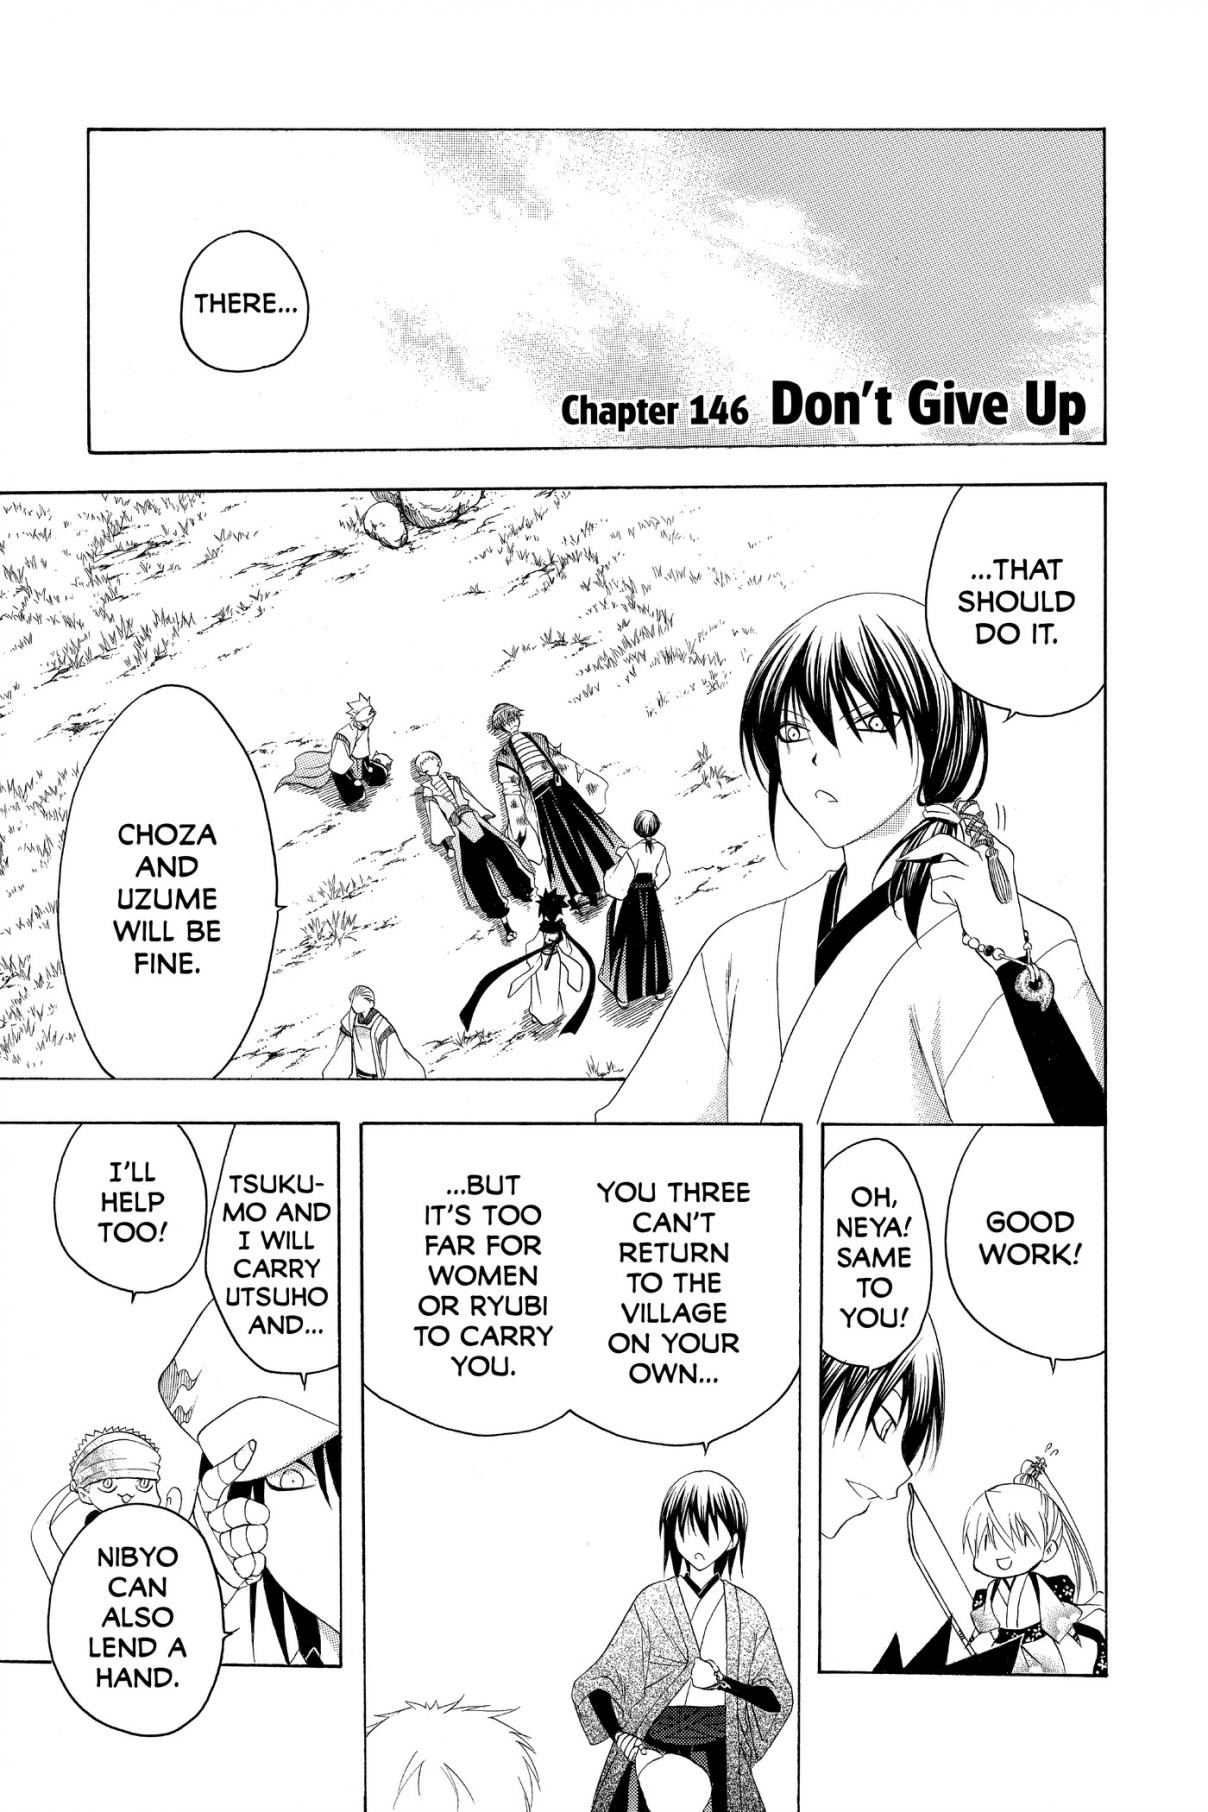 Itsuwaribito Utsuho Vol. 15 Ch. 146 Don't Give Up